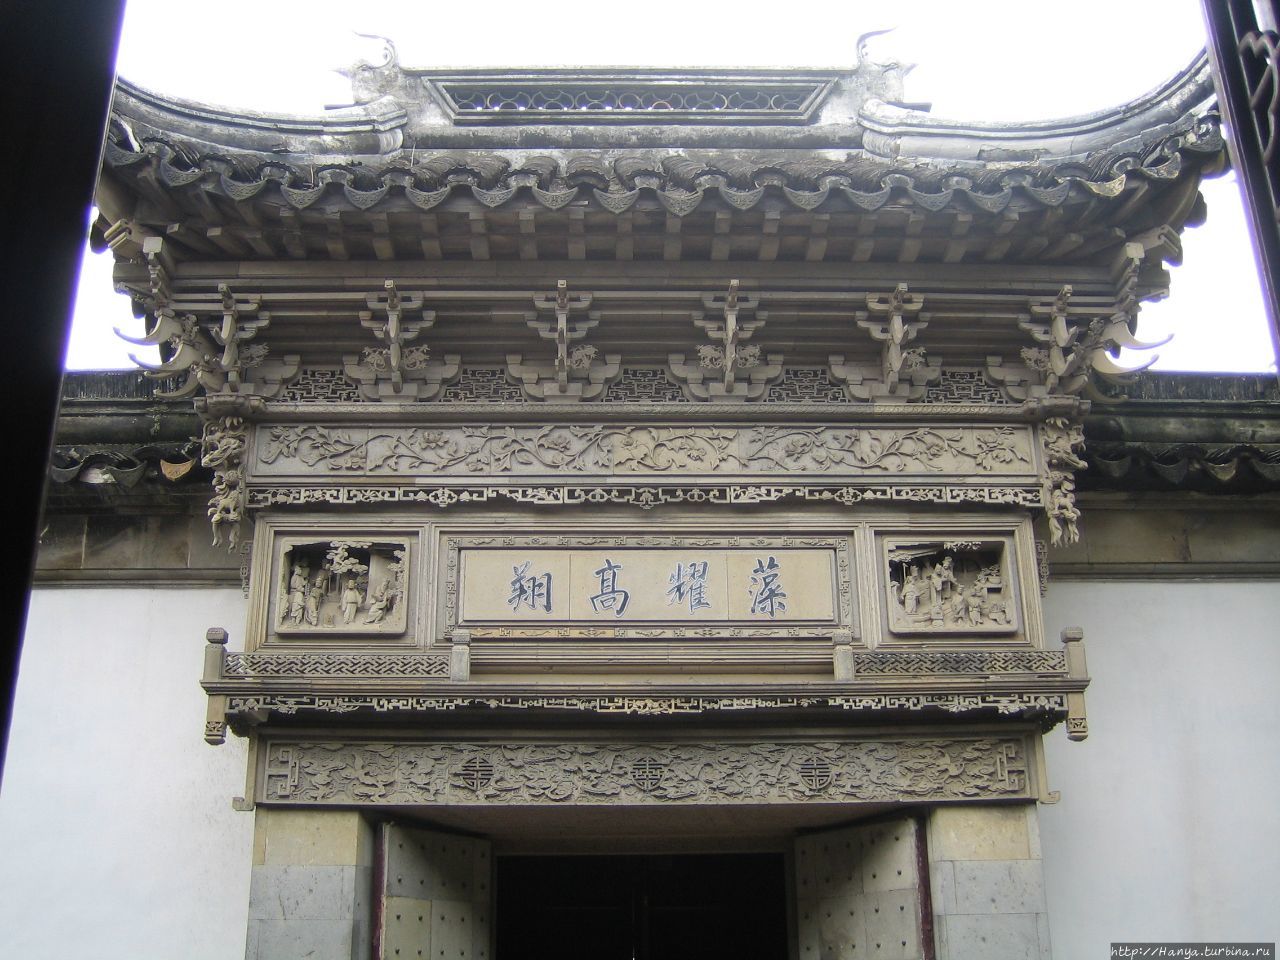 Сучжоу. Сад  мастера сетей (сад рыбака). Входные ворота, покрытые искусным орнаментом Сучжоу, Китай